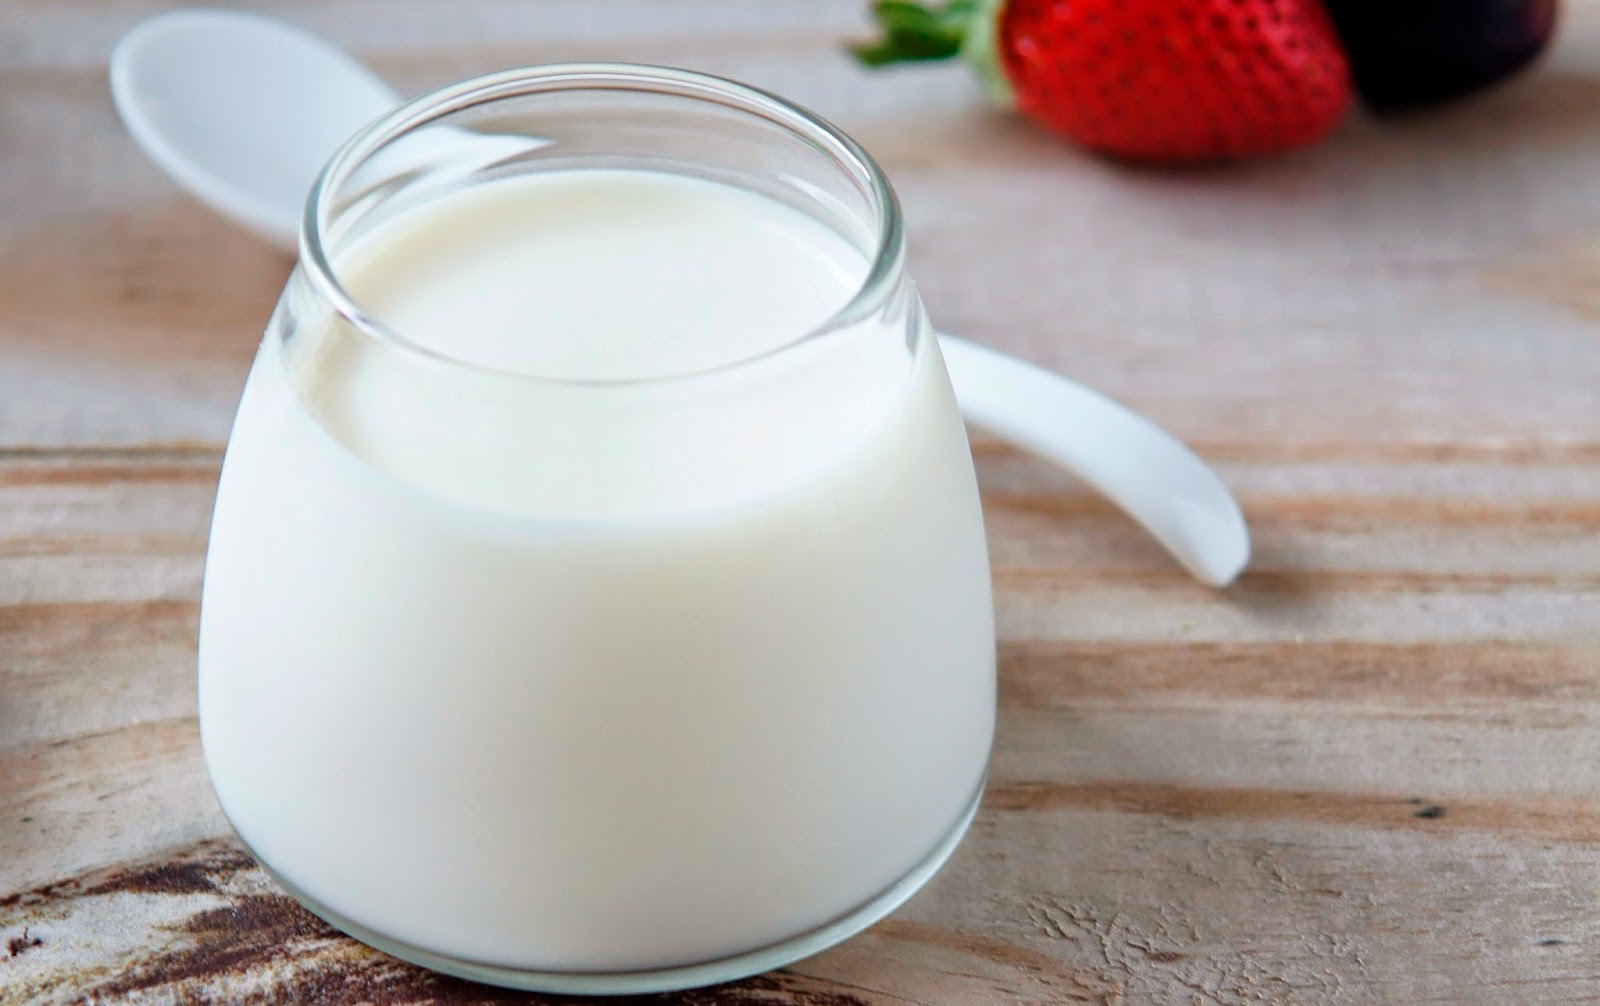 Bạn nên chọn những loại sữa đã được lược bớt chất béo hoặc chuyển sang uống sữa đậu nành, sữa hạnh nhân ít calo và chất béo.